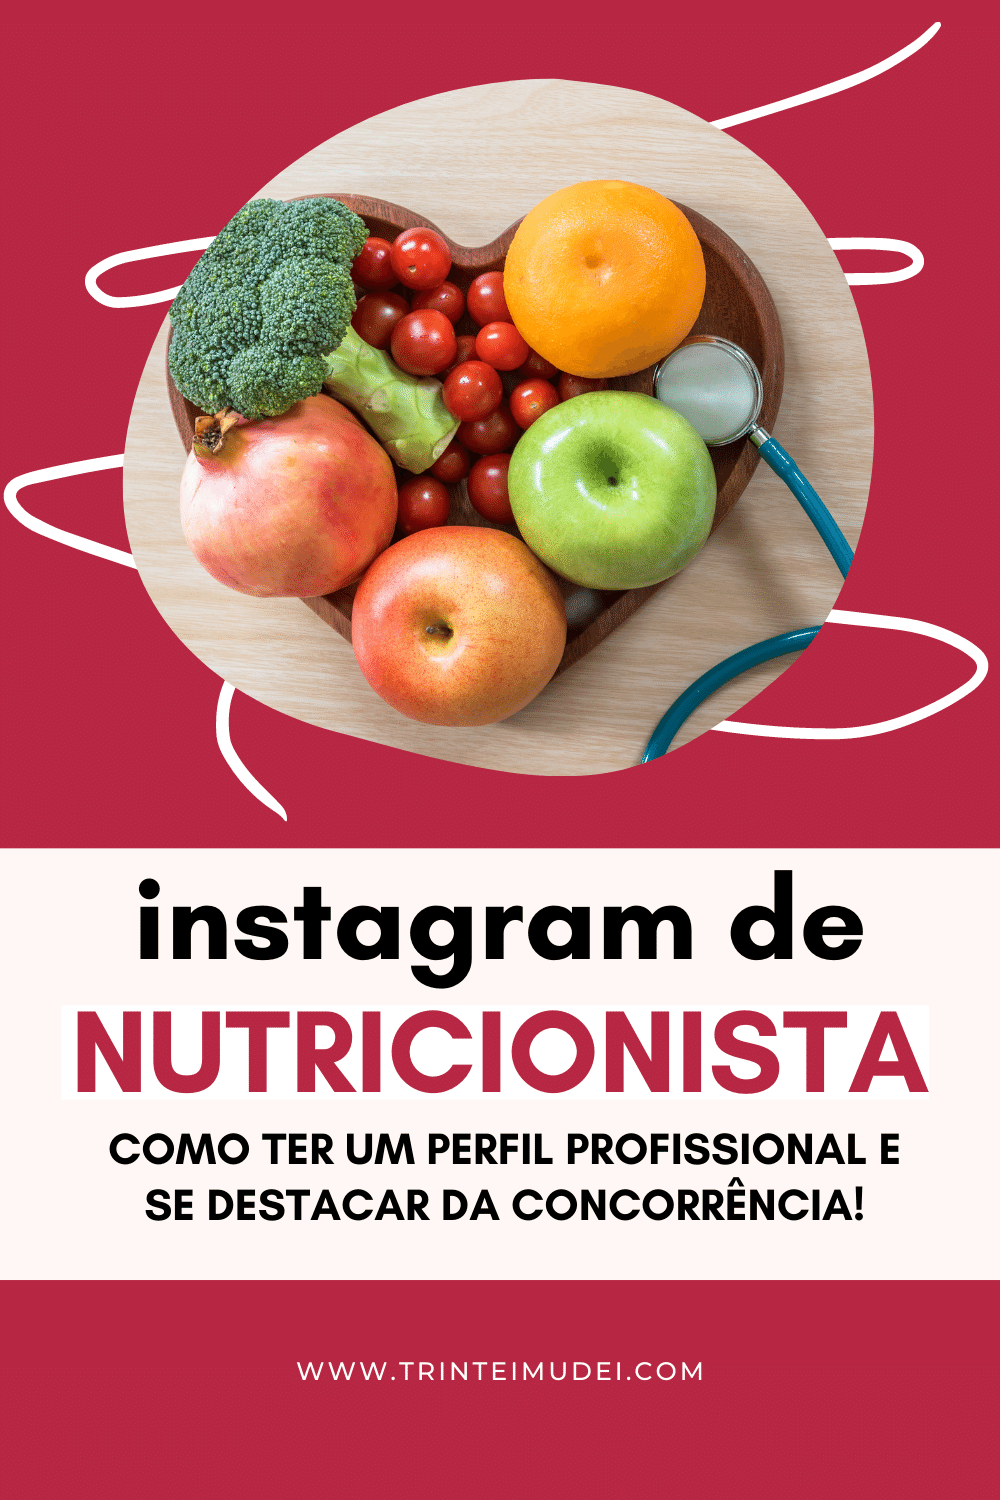 Instagram Para Nutricionista Construa Um Perfil Profissional 9224